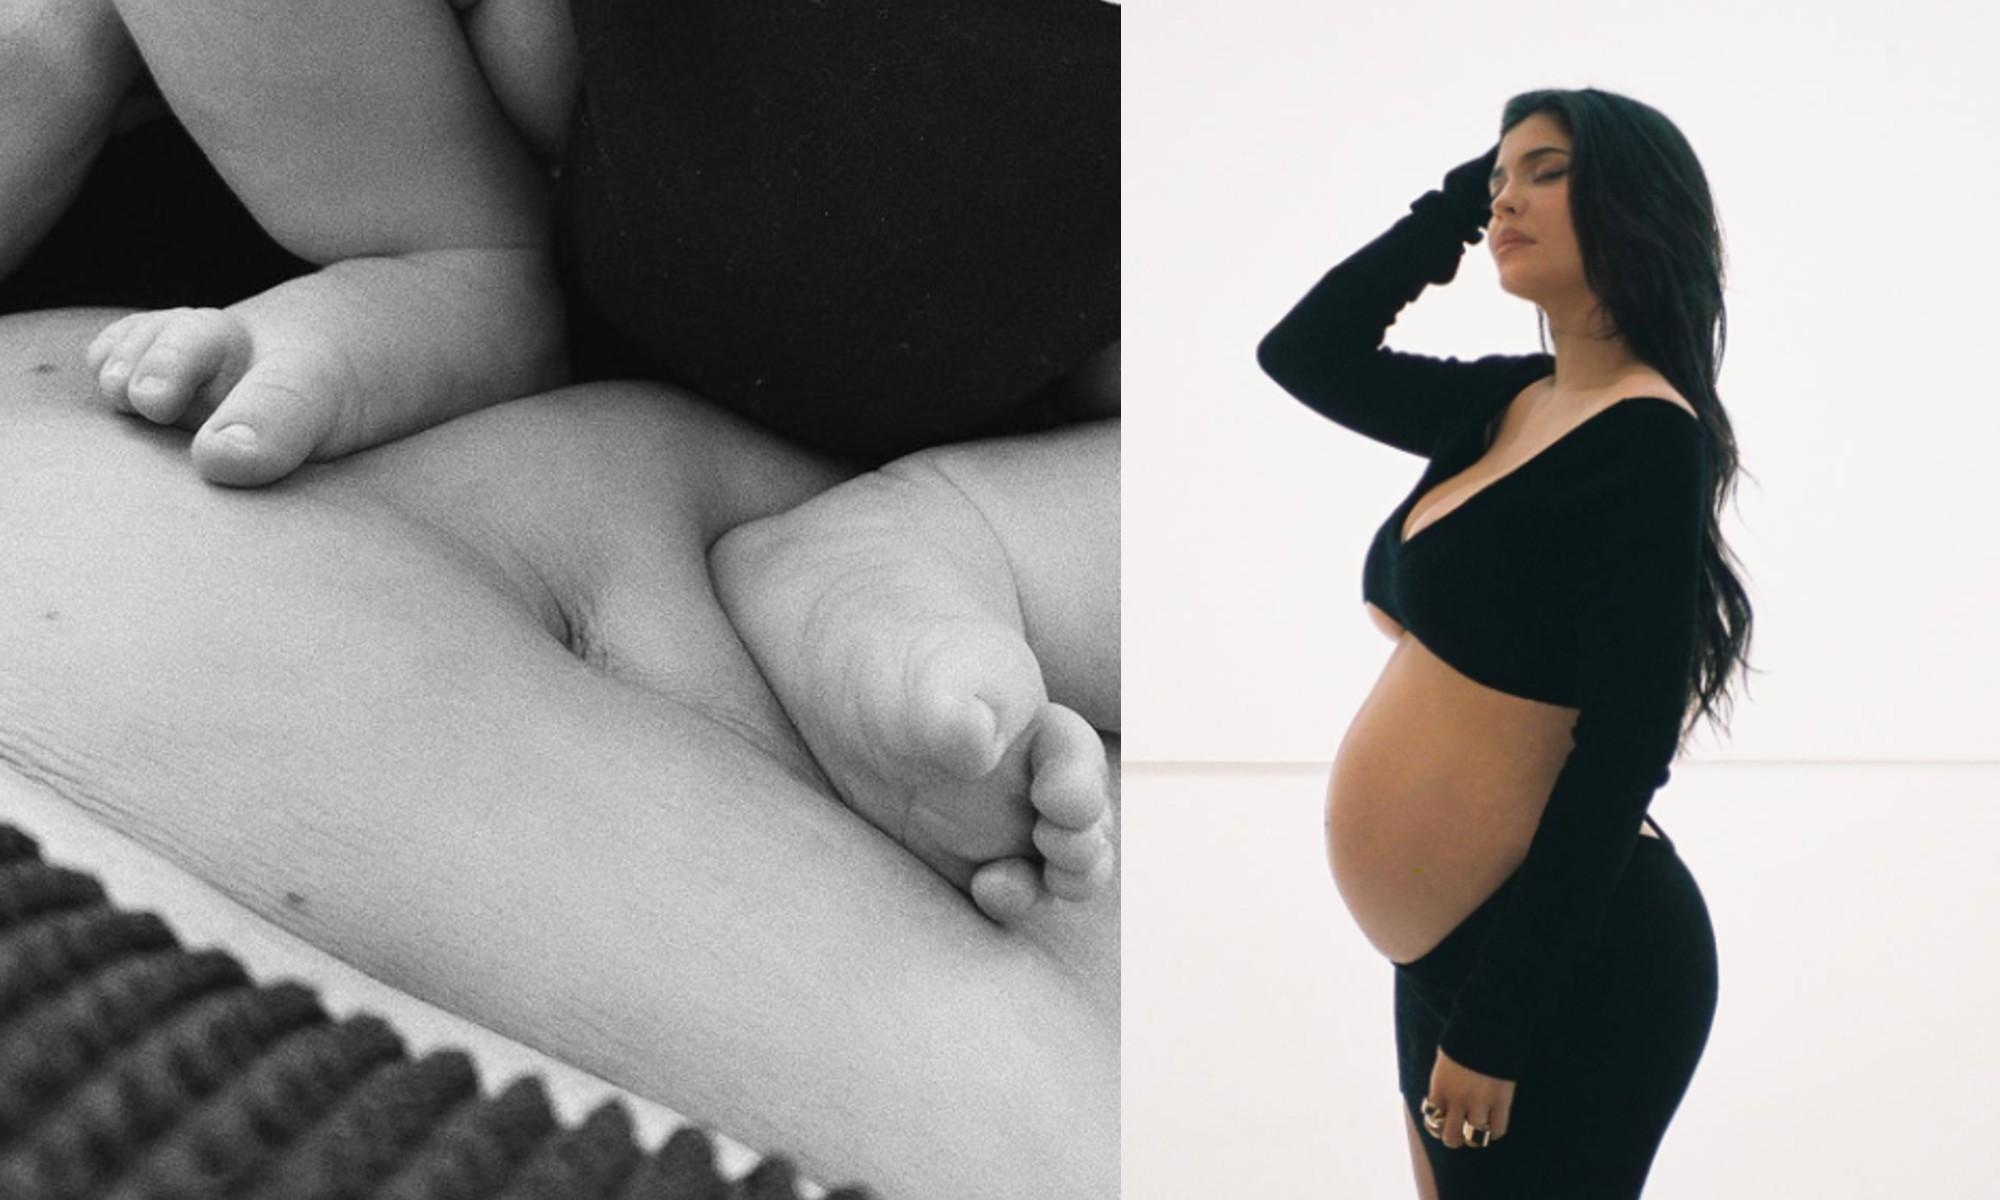 “A nuestro hijo”: Kylie Jenner publica el video del nacimiento de su hijo